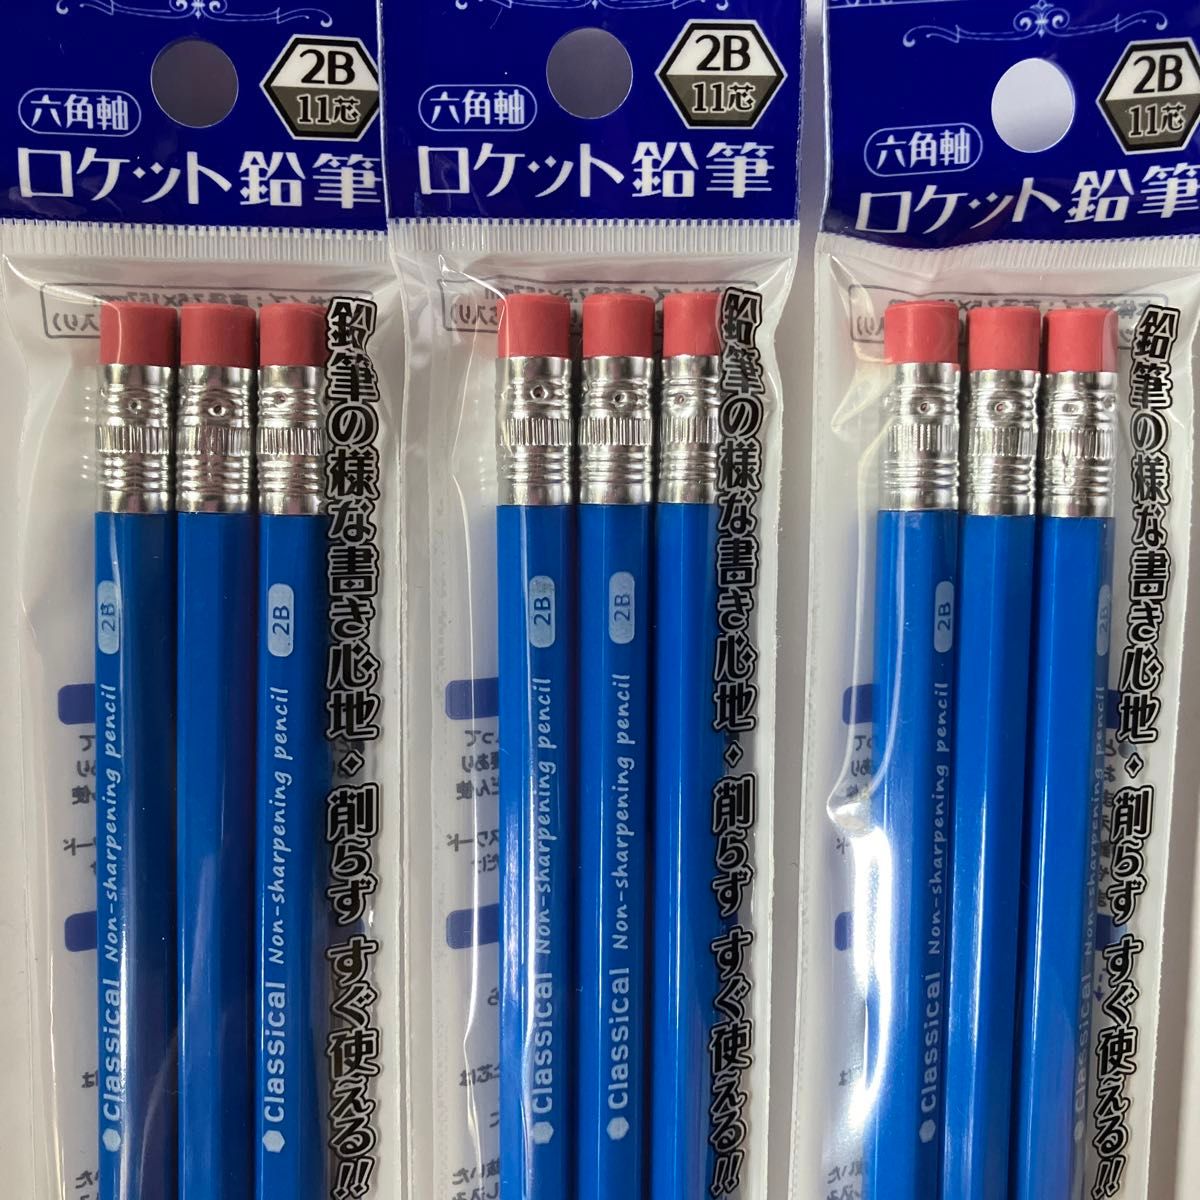 新品 3本入り×3袋 2B 六角軸 ロケット鉛筆 黒芯 15.7cm 書きやすい★クーポン使用で200円引きになります★